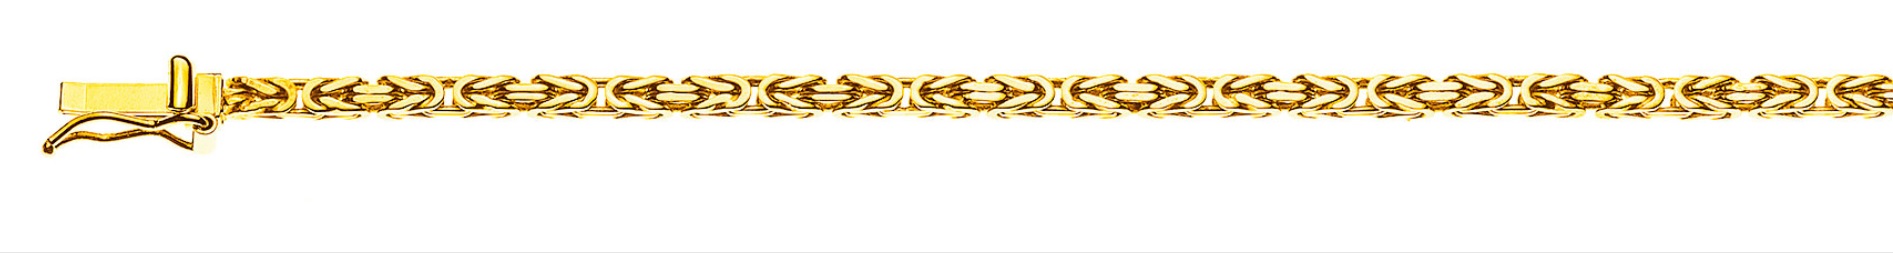 AURONOS Prestige Collier en or jaune 18K chaîne royale 45cm 2mm